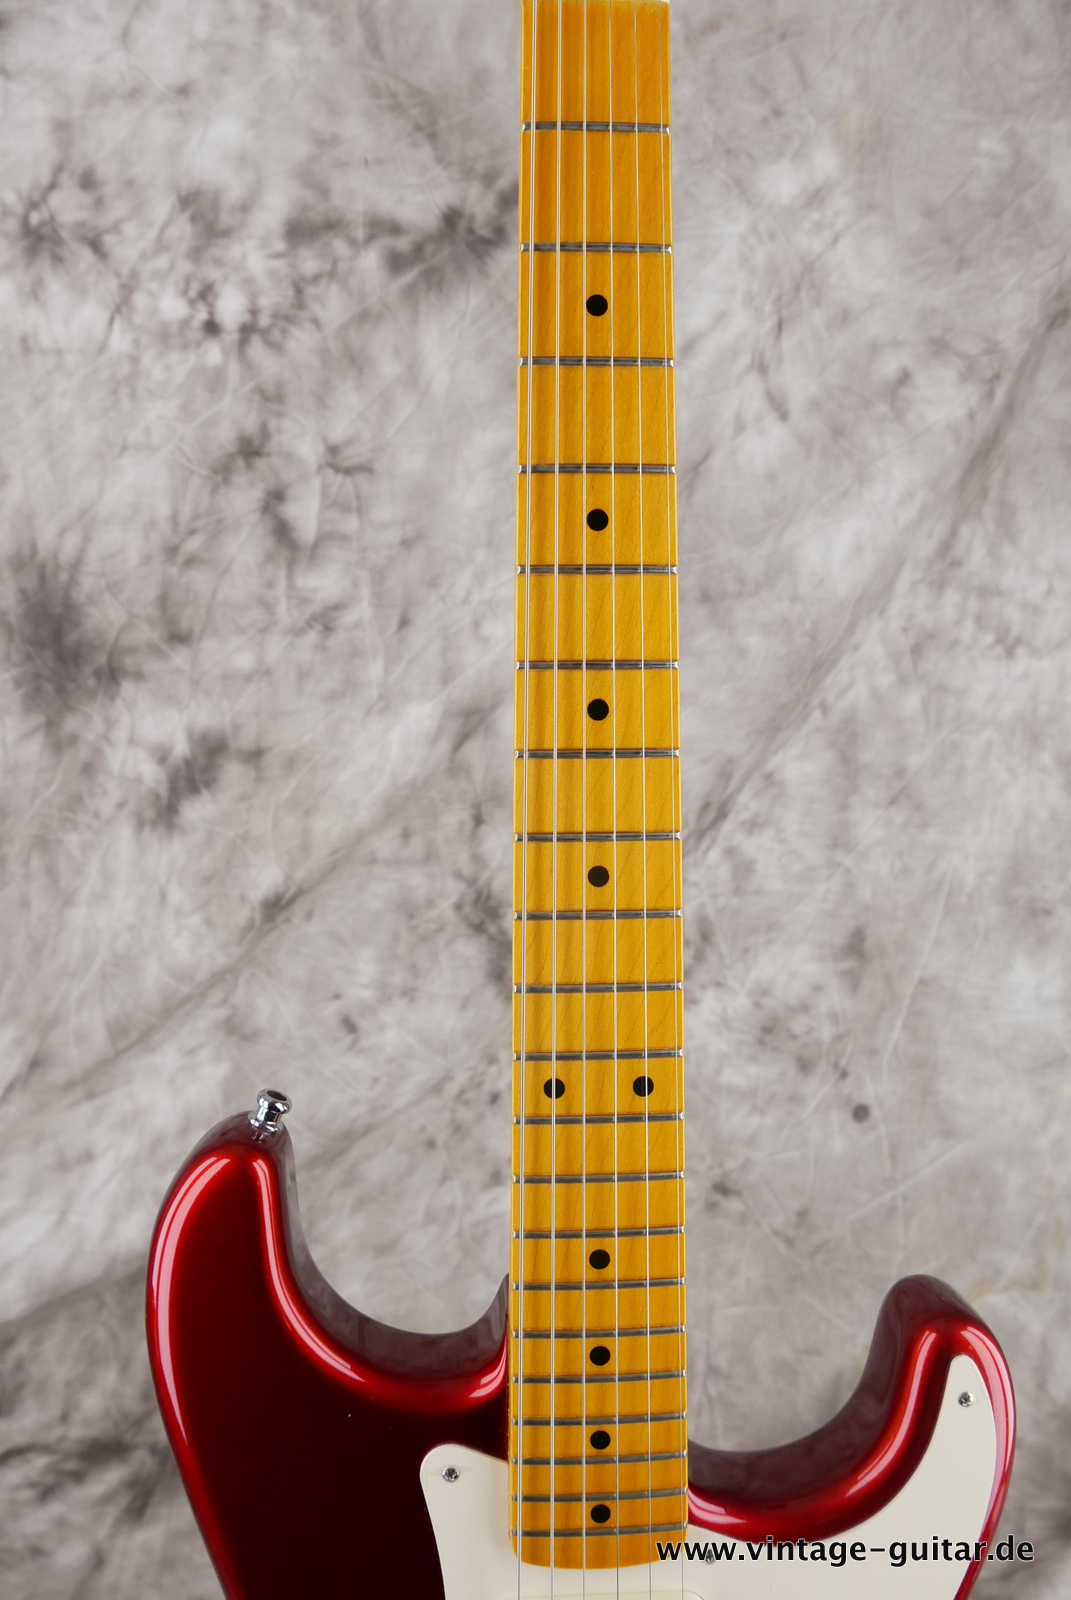 img/vintage/5125/Fender_Stratocaster_Vintage_Hot_Rod_candy_apple_red_USA_2010-011.JPG